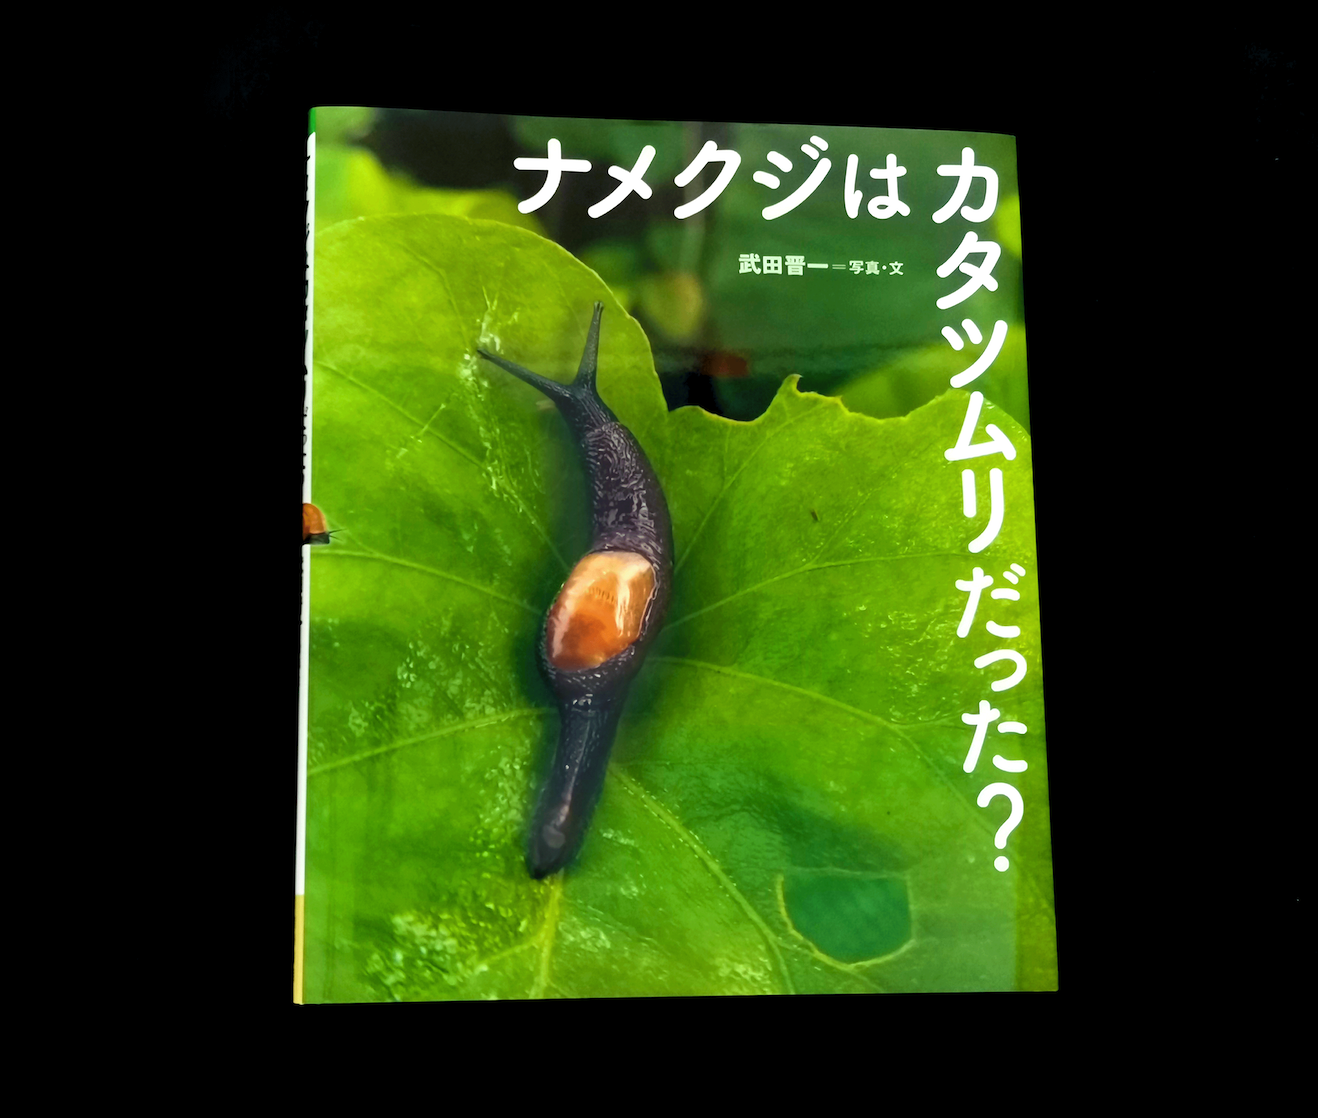 めくるめくほどに多種多様 カタツムリの不思議な進化に学ぶ一冊 東京印書館 写真集 展覧会図録 絵本 その他印刷物の企画制作 Tokyo Inshokan Printing Co Ltd